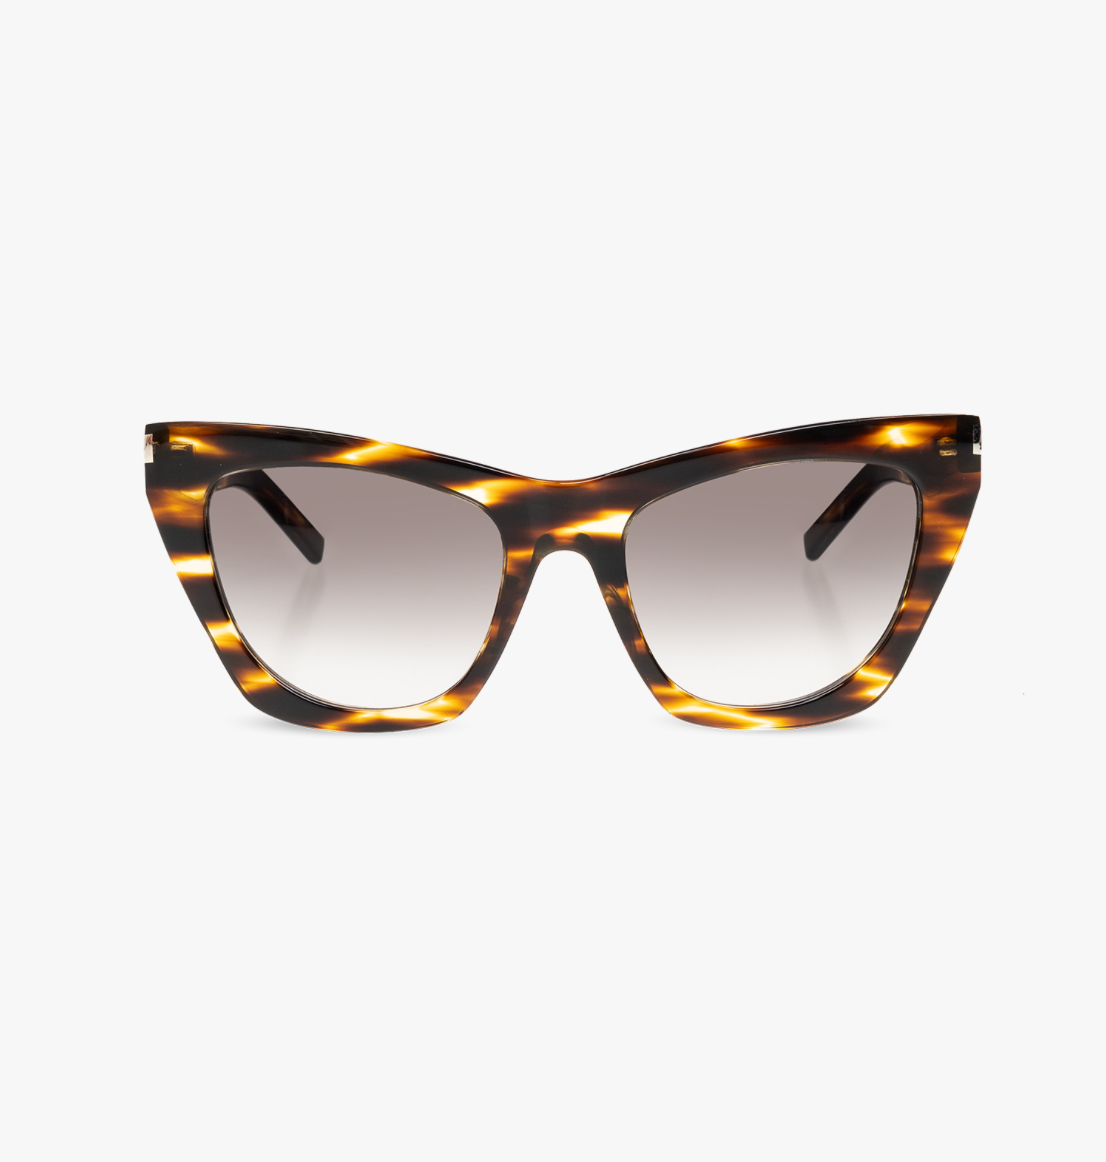 Yvest Saint Laurent SL-214-KATE-024 55mm New Sunglasses